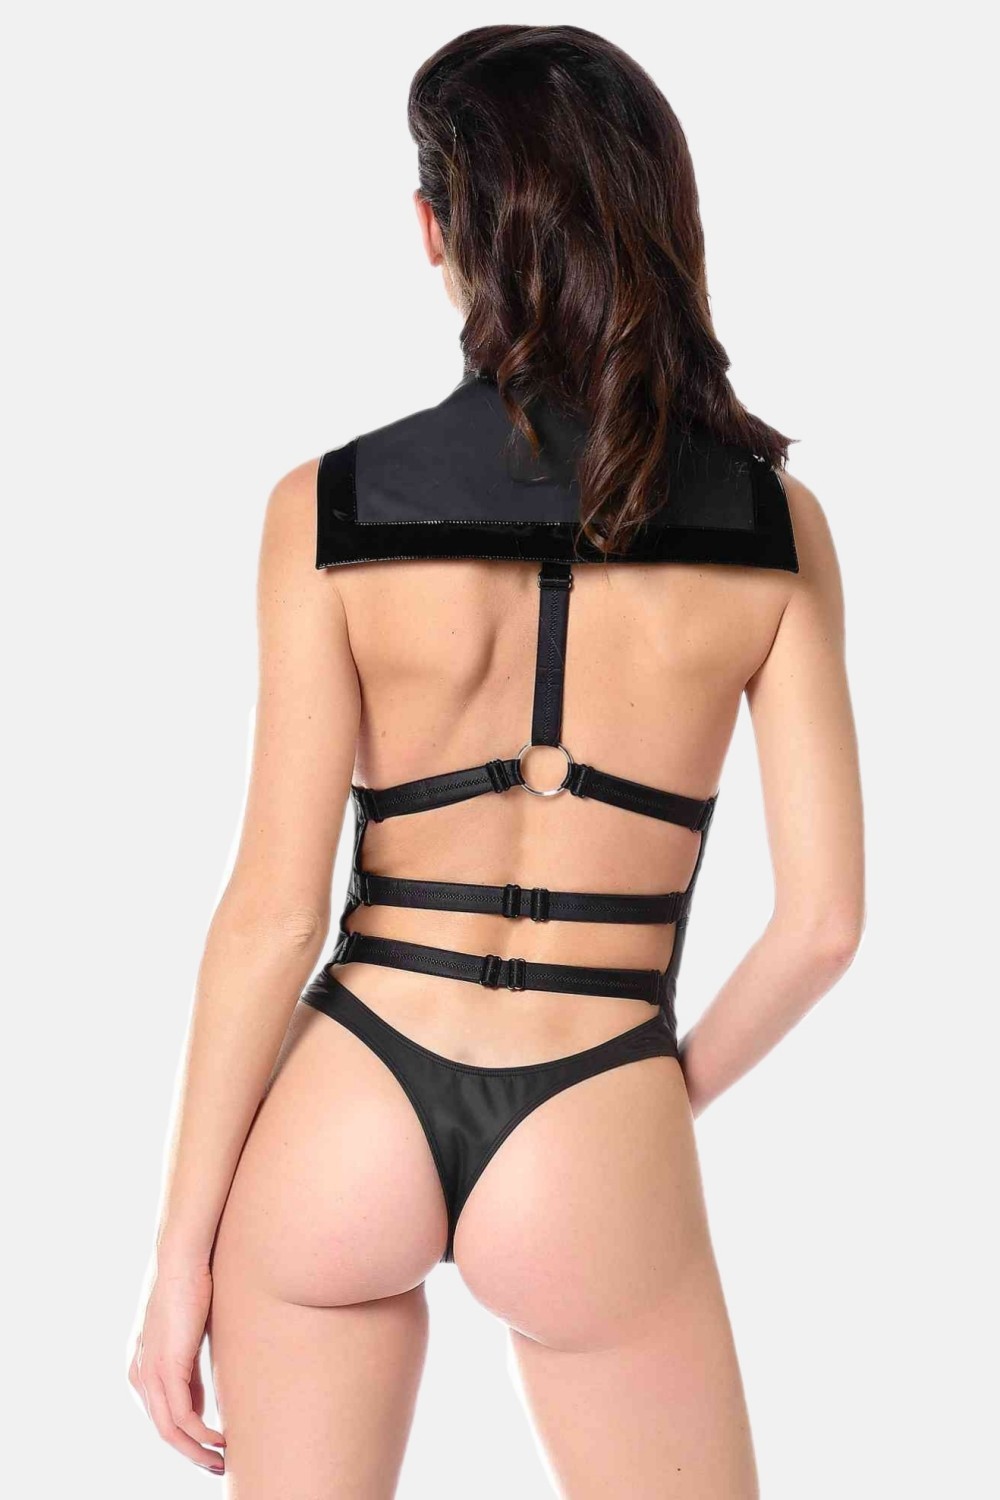 Ondine, body sexy wetlook mat noir - Patrice Catanzaro Site Officiel